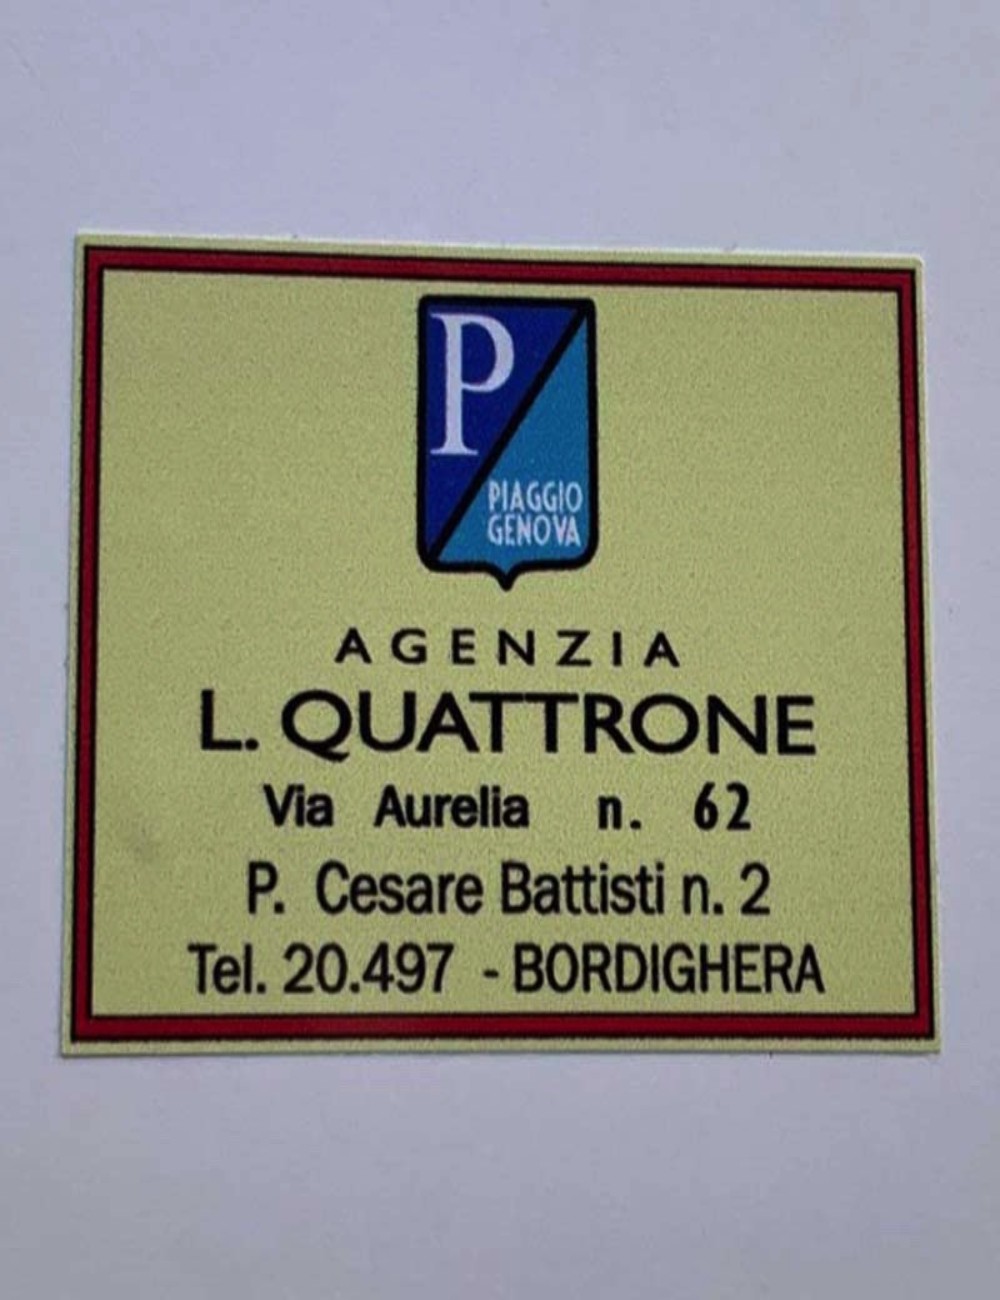 Adesivo concessionario L. Quattrone. Dimensioni: 5,4 cm x 4 cm.